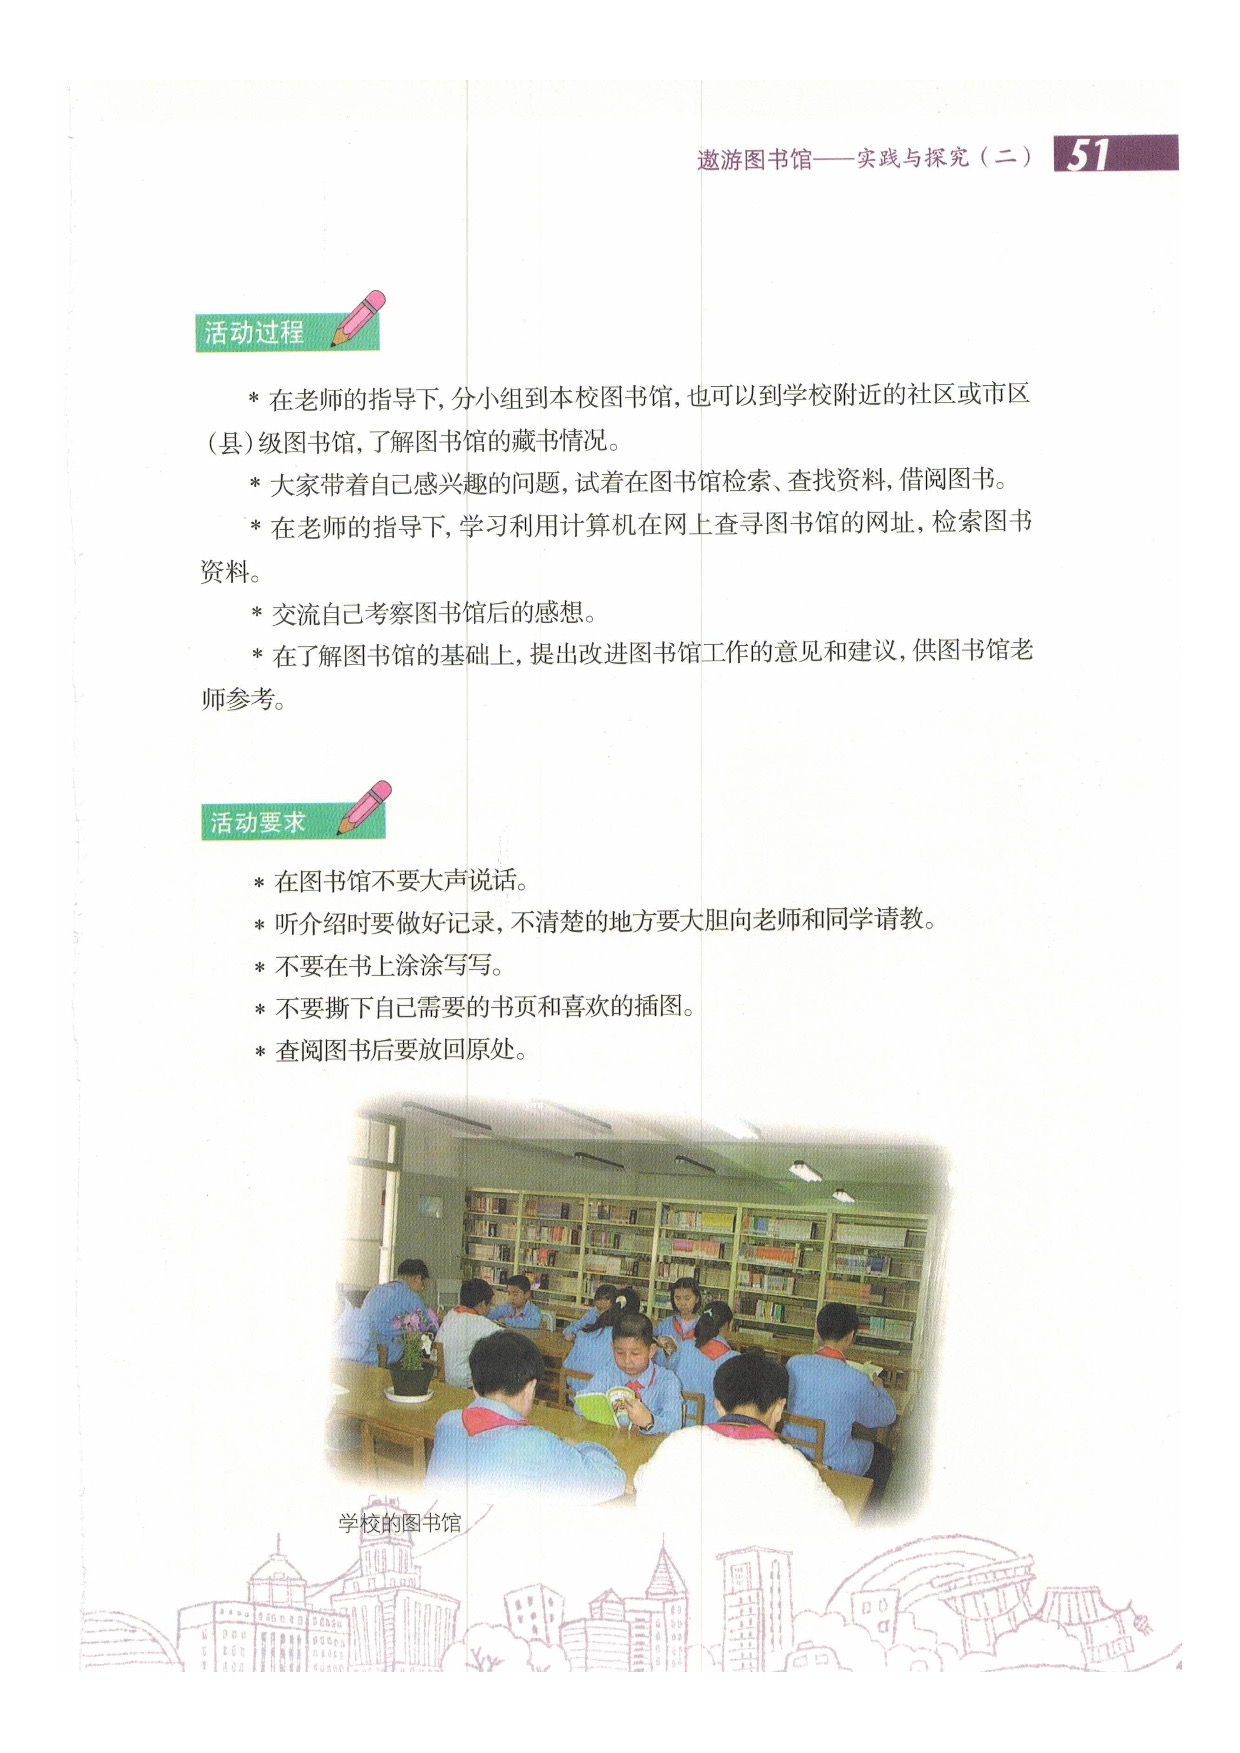 遨游图书馆(2)